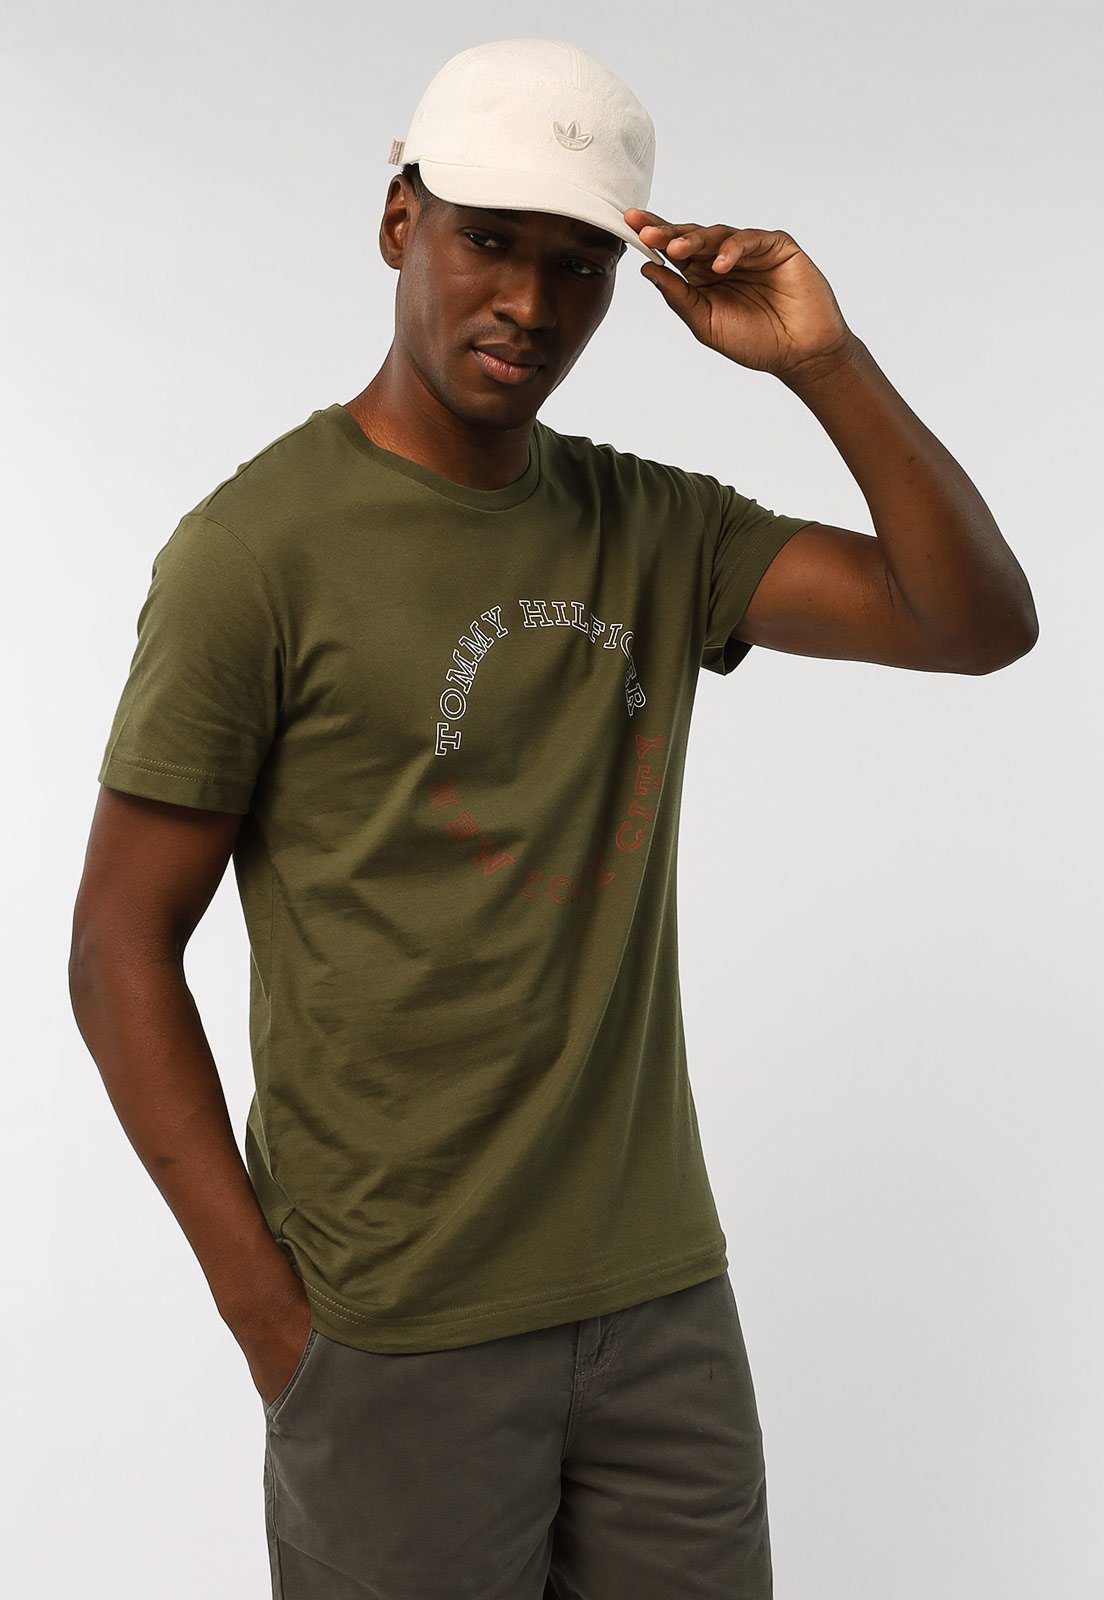 Camiseta Tommy Hilfiger Logo Verde - Compre Agora